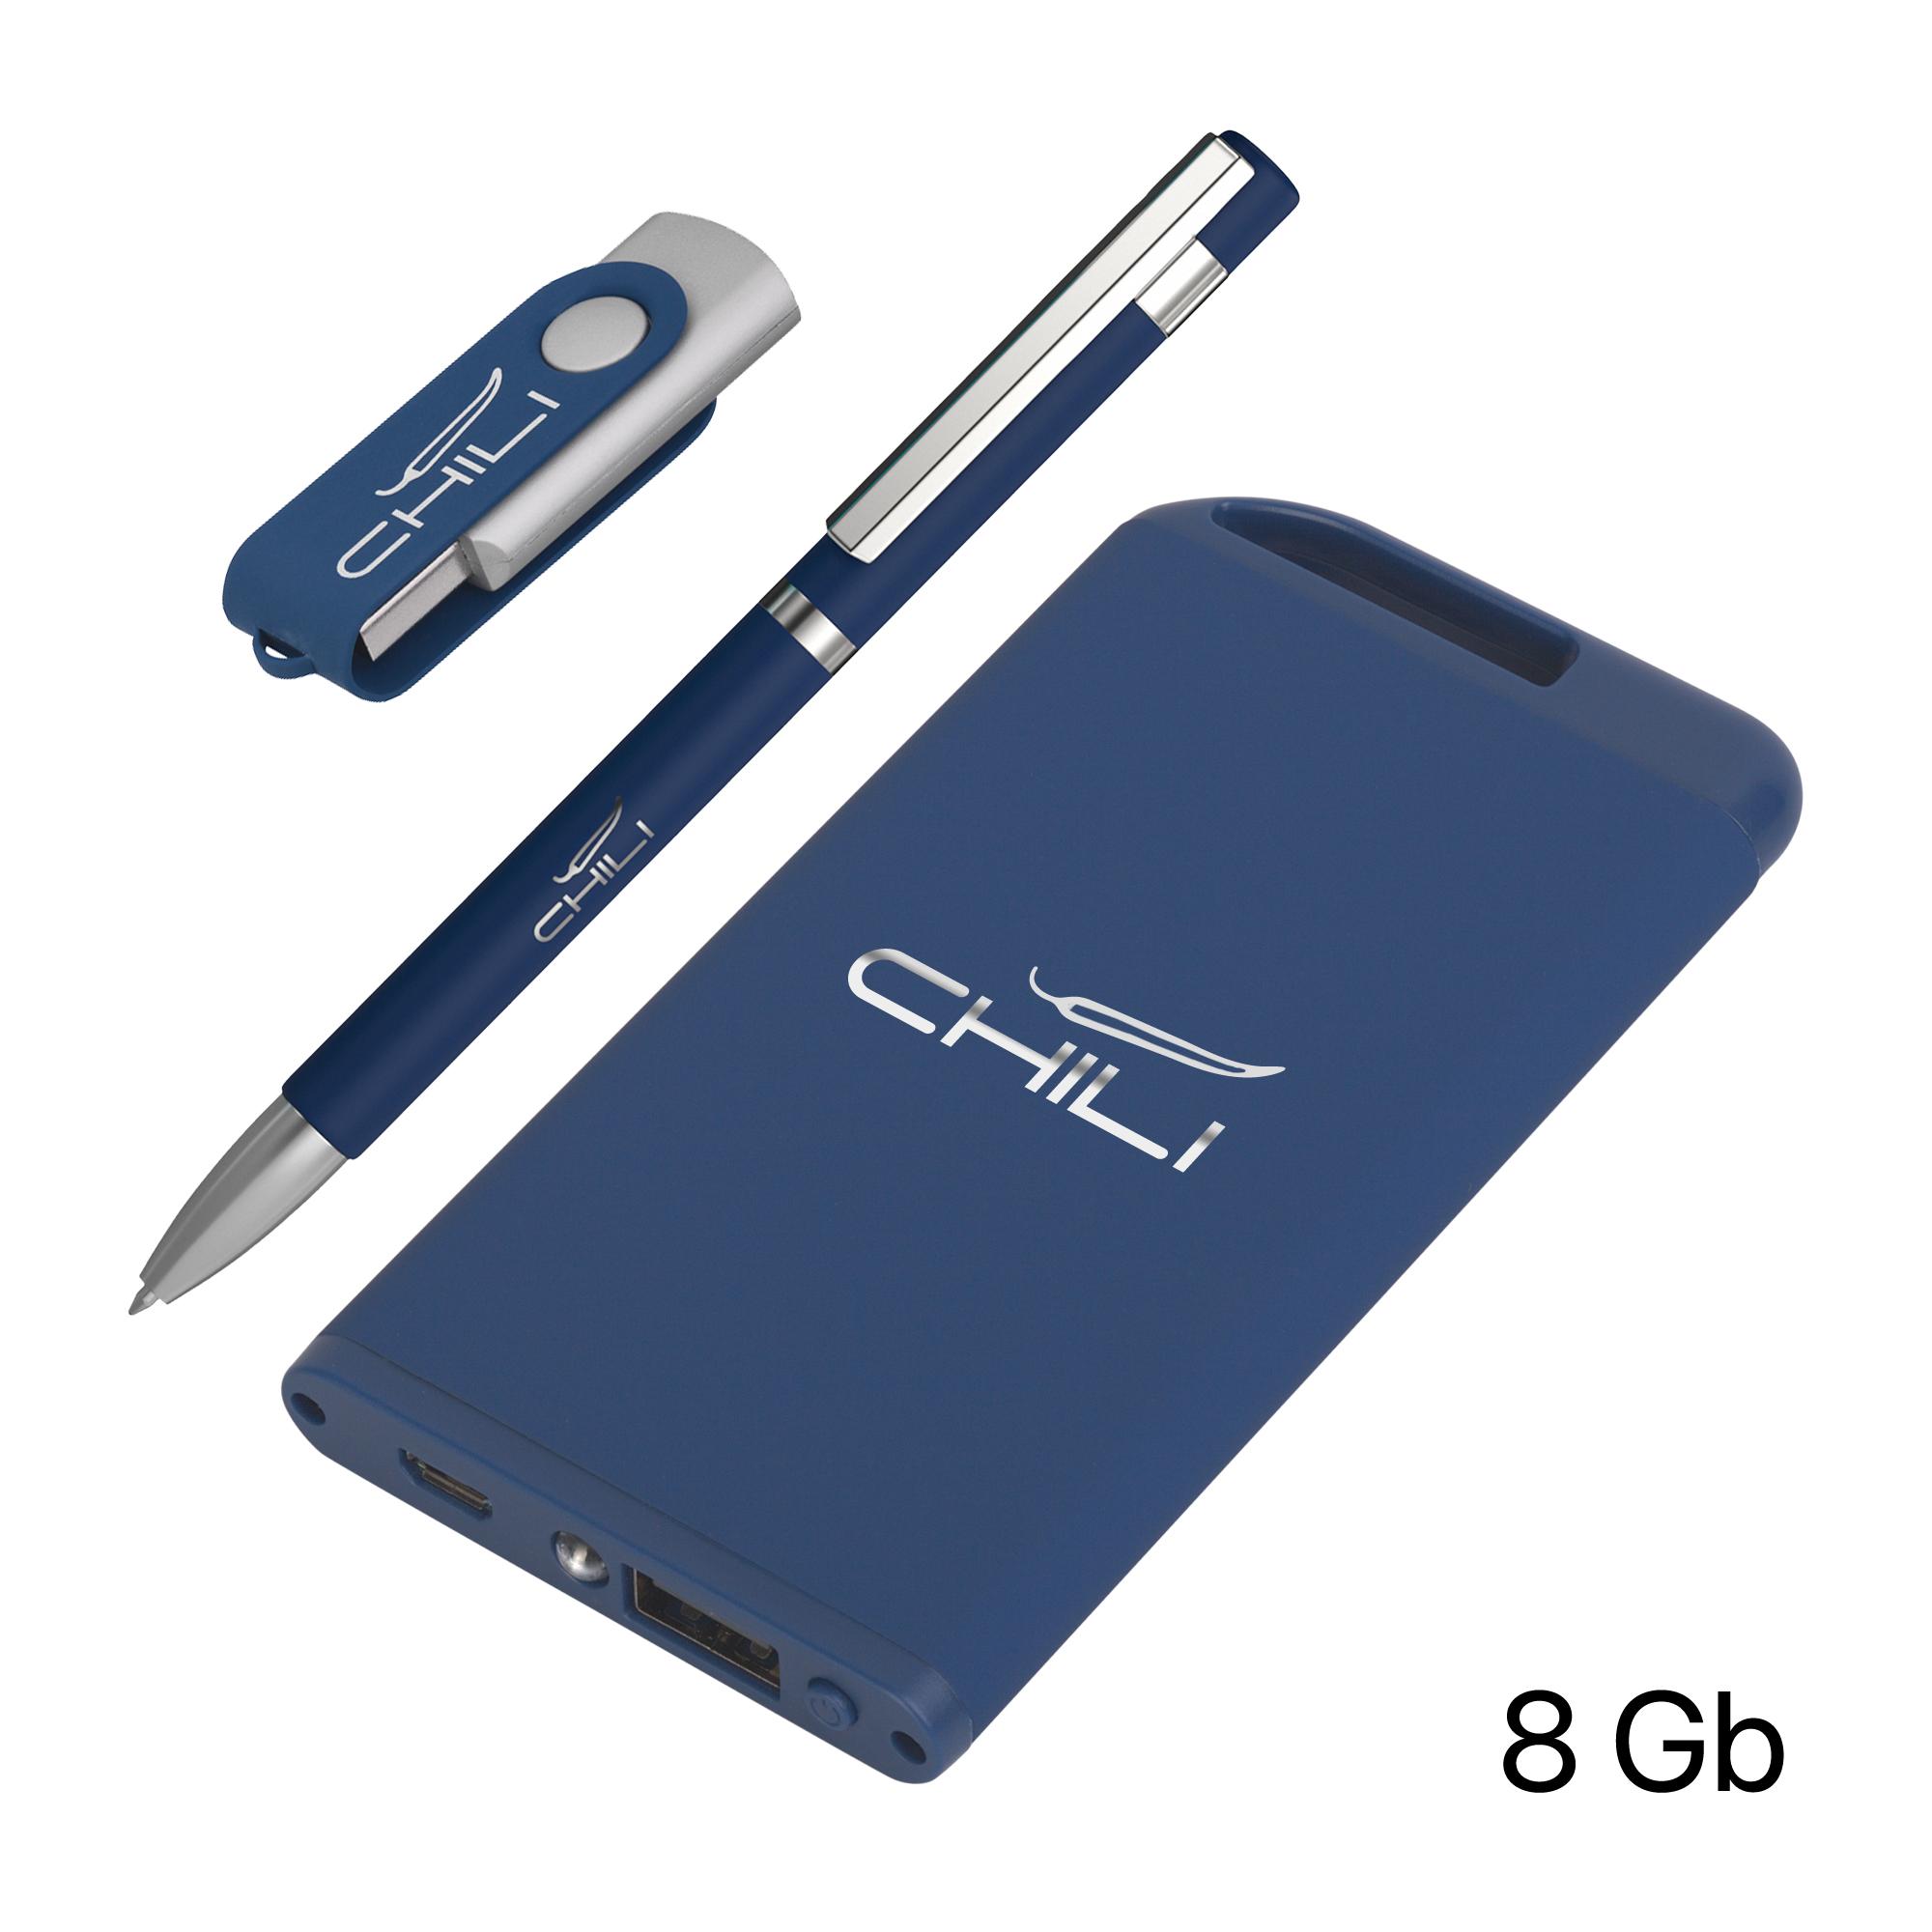 Набор ручка + флеш-карта 8Гб + зарядное устройство 4000 mAh soft touch, цвет темно-синий, фото 1